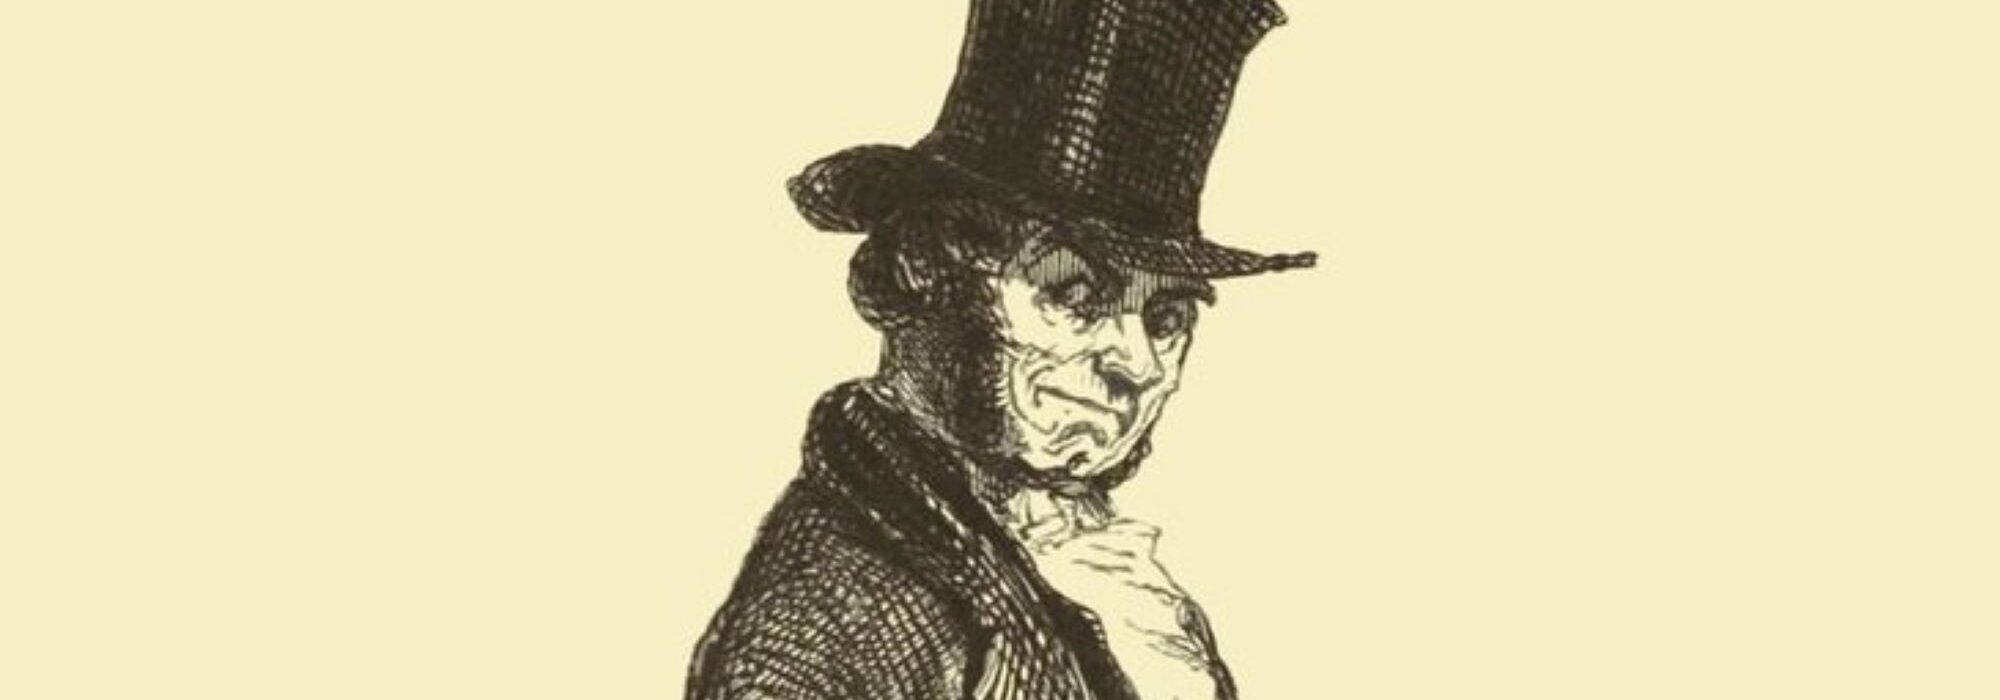 Ilustração: Vautrin retratado por Daumier (séc. XIX)